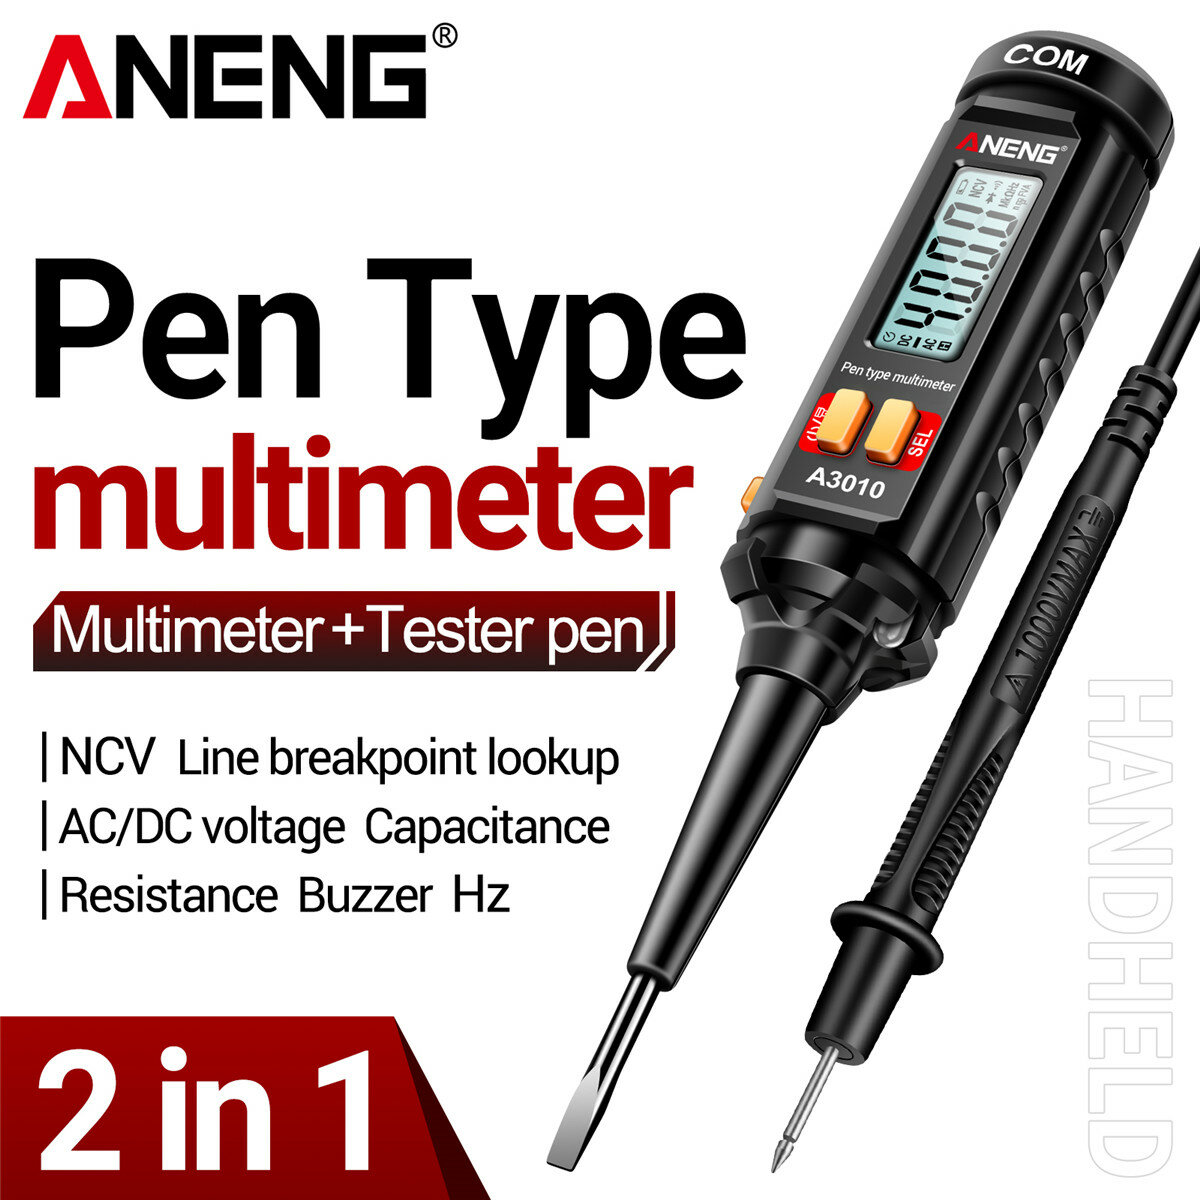 NUOVO Multimetro a penna ANENG ad alta precisione per misurazione rapida di tensione AC/DC, resistenza, capacitanza, fre